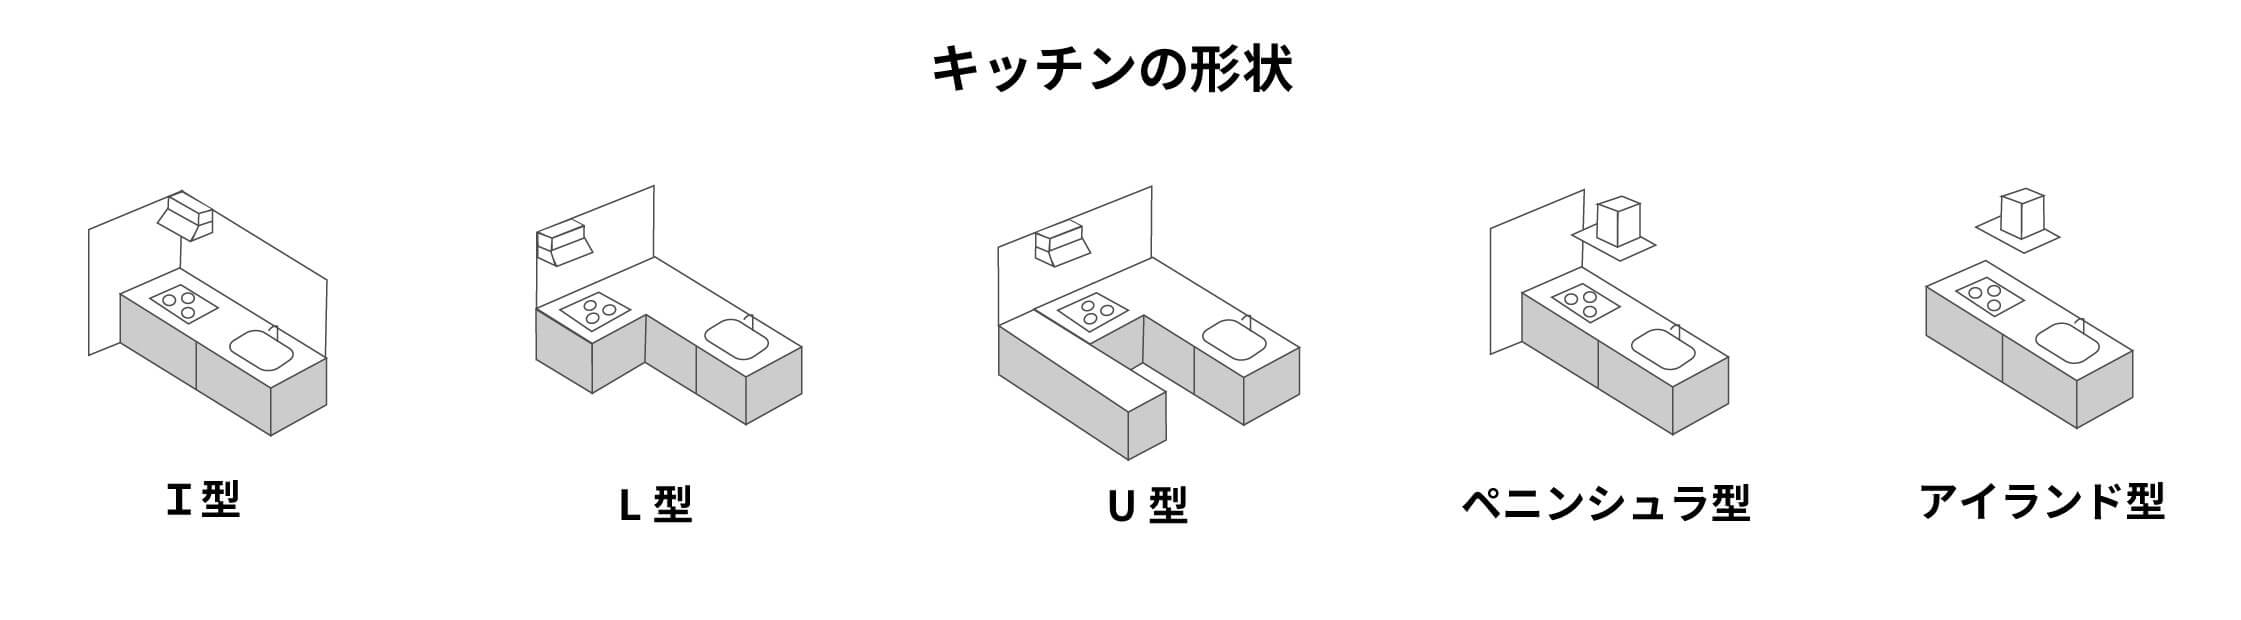 【キッチンの代表的な形状5種類】
・I型・L型・U型・ペニンシュラ型・アイランド型